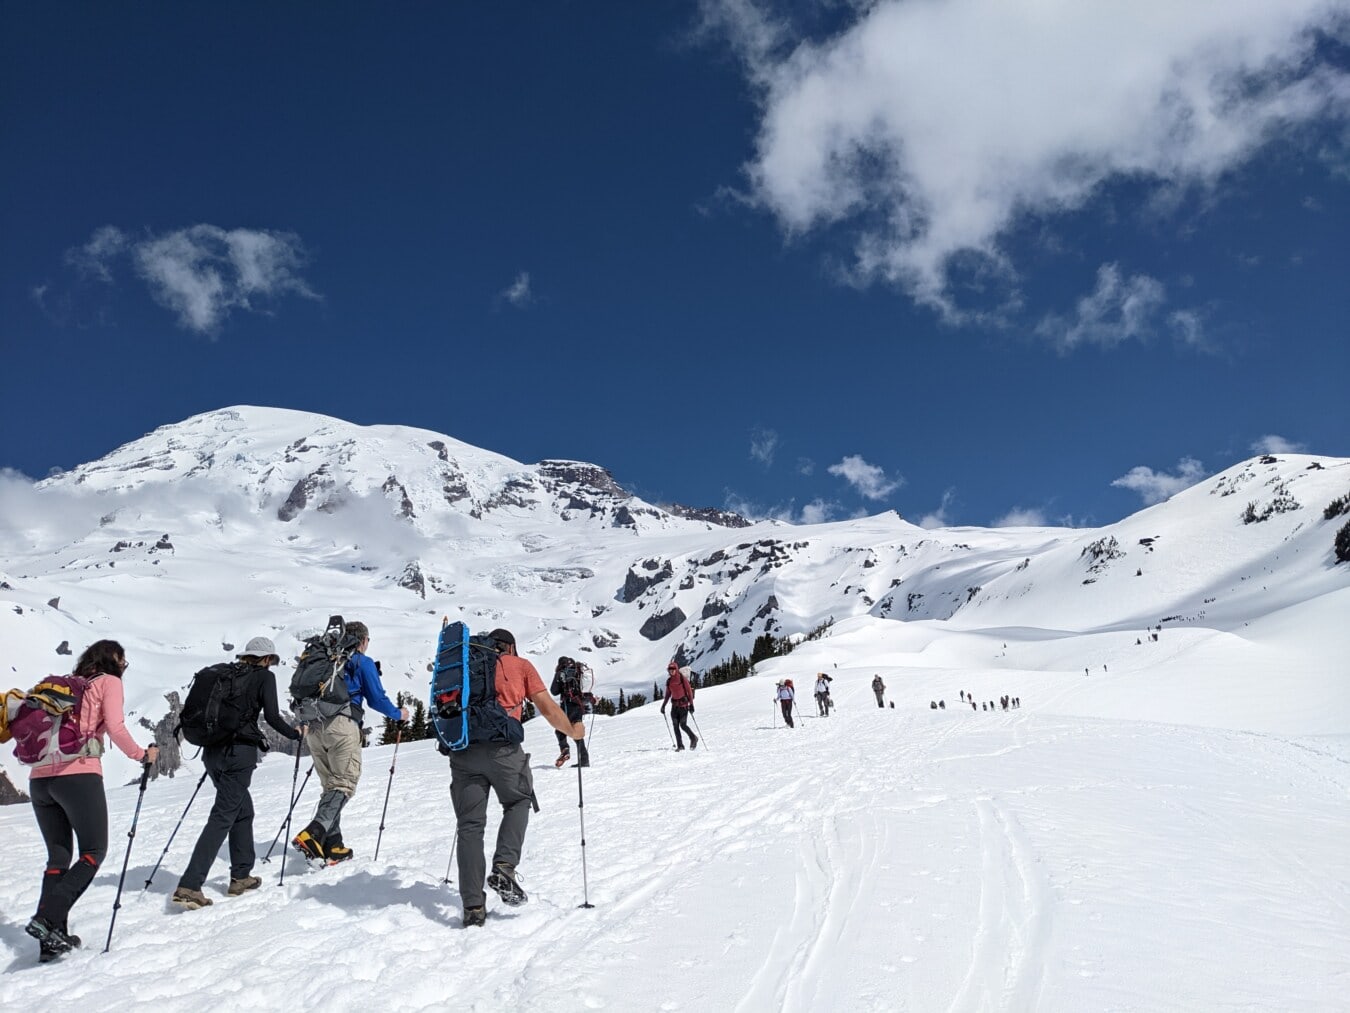 skieur, alpiniste, ski, activité physique, randonneur, gens, des loisirs, neige, paysage, montagnes